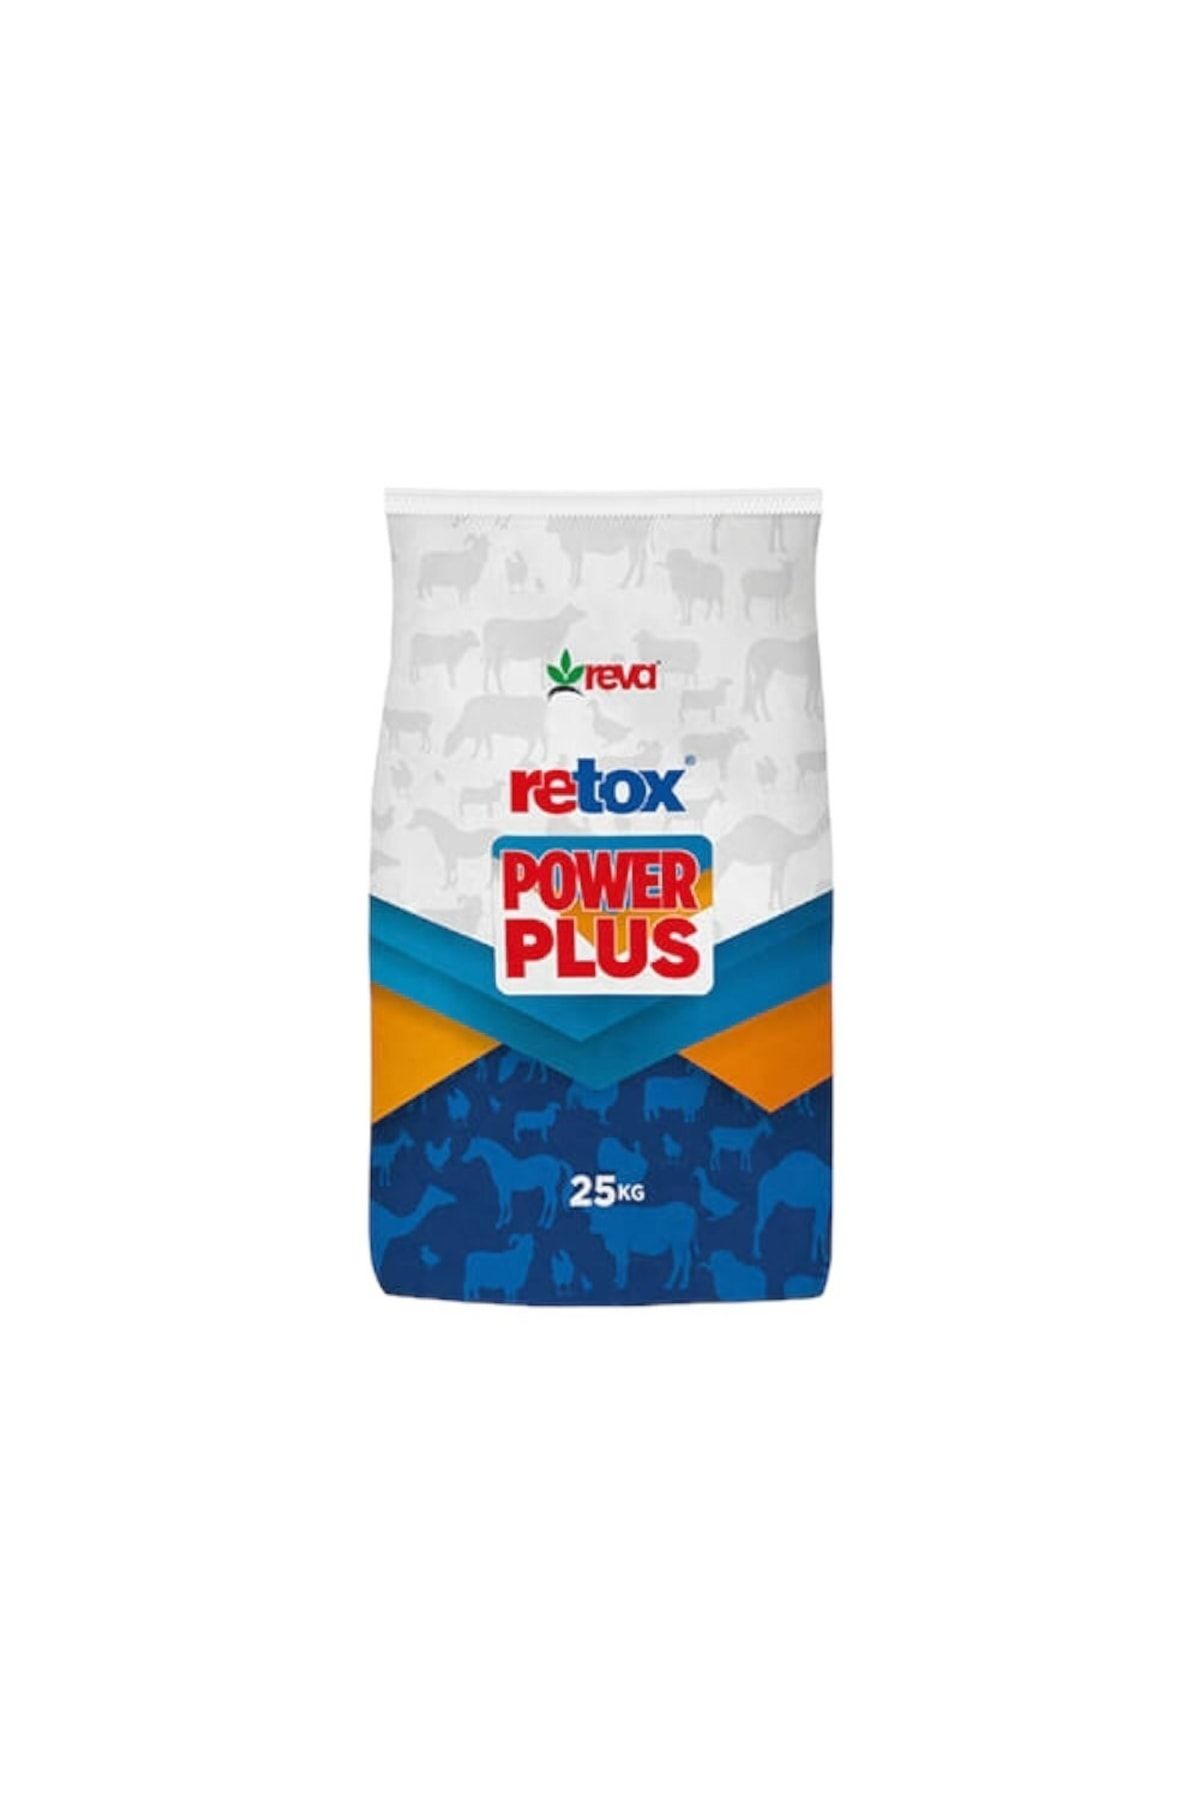 REVA Retox Power Plus Toksin Bağlayıcı Hayvan Yem Katkı